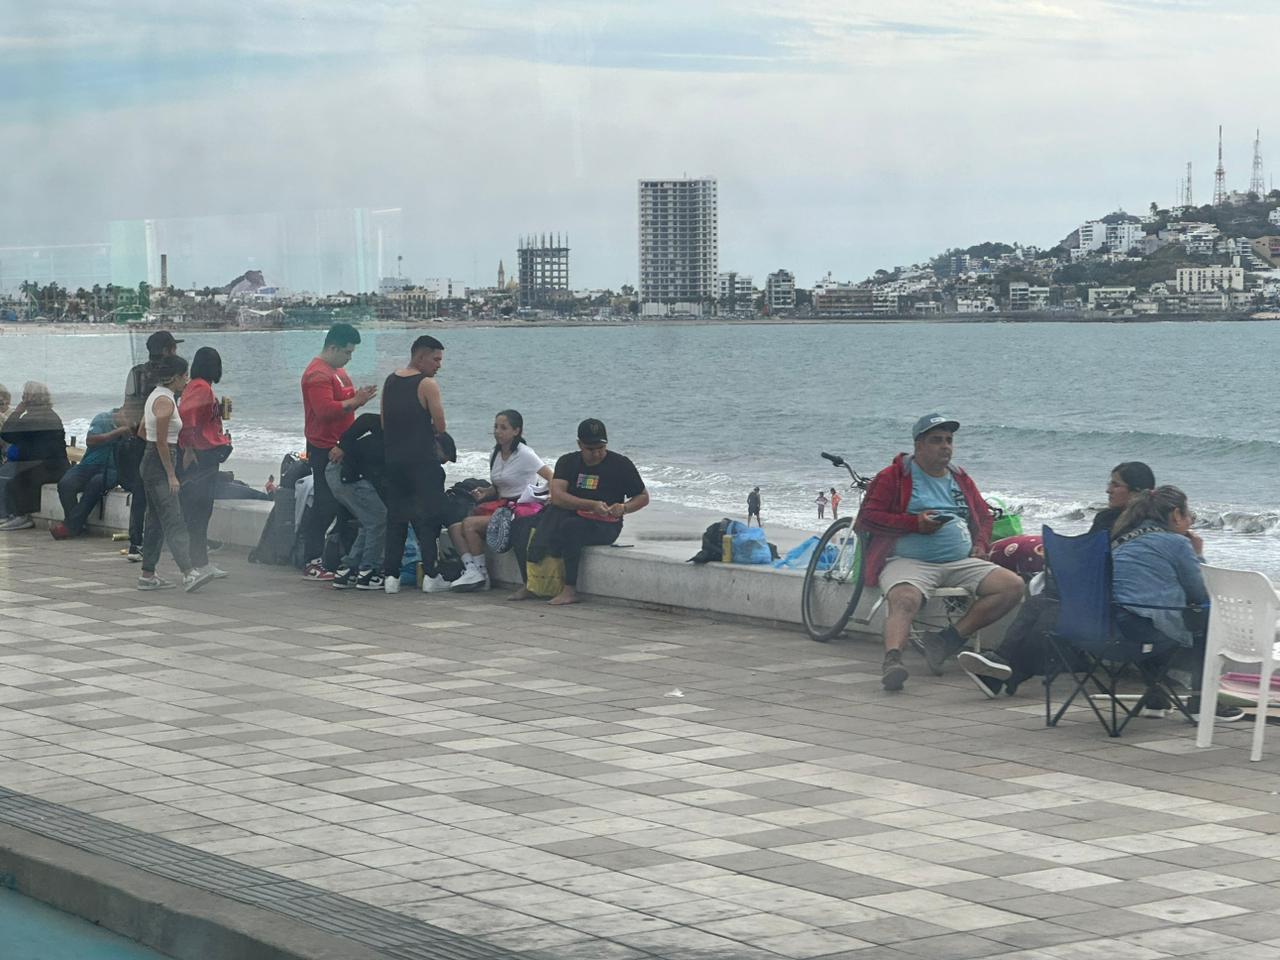 Y en Mazatlán, ¿La gente es necia? Pues… hacen caso omiso y se vuelven a instalar en el Malecón